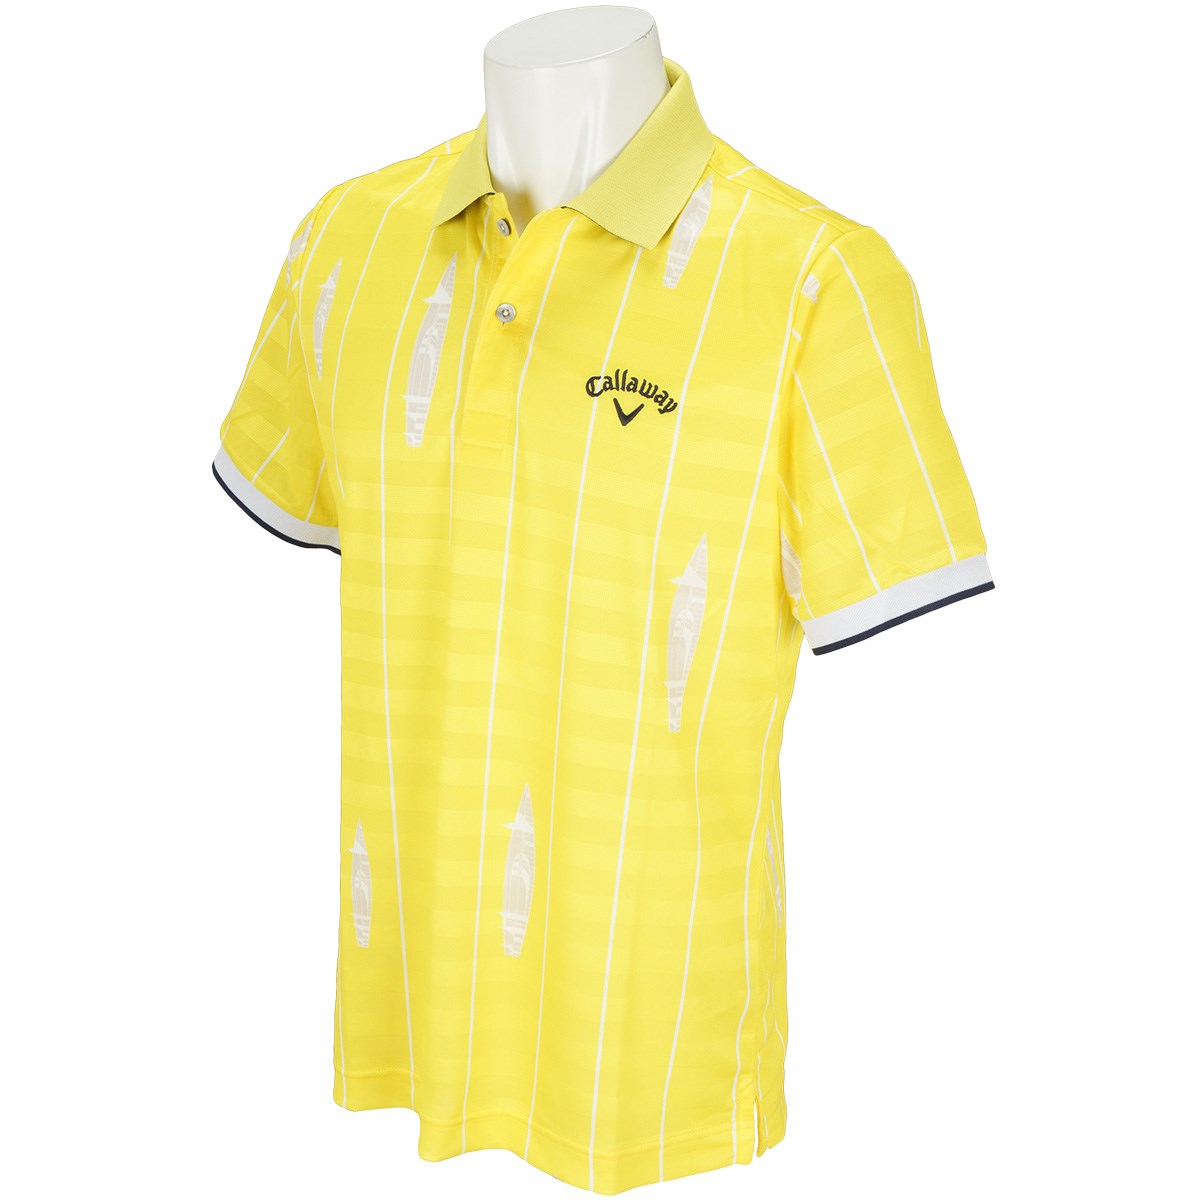 キャロウェイゴルフ(Callaway Golf) ストライププリントボーダー半袖ポロシャツ 